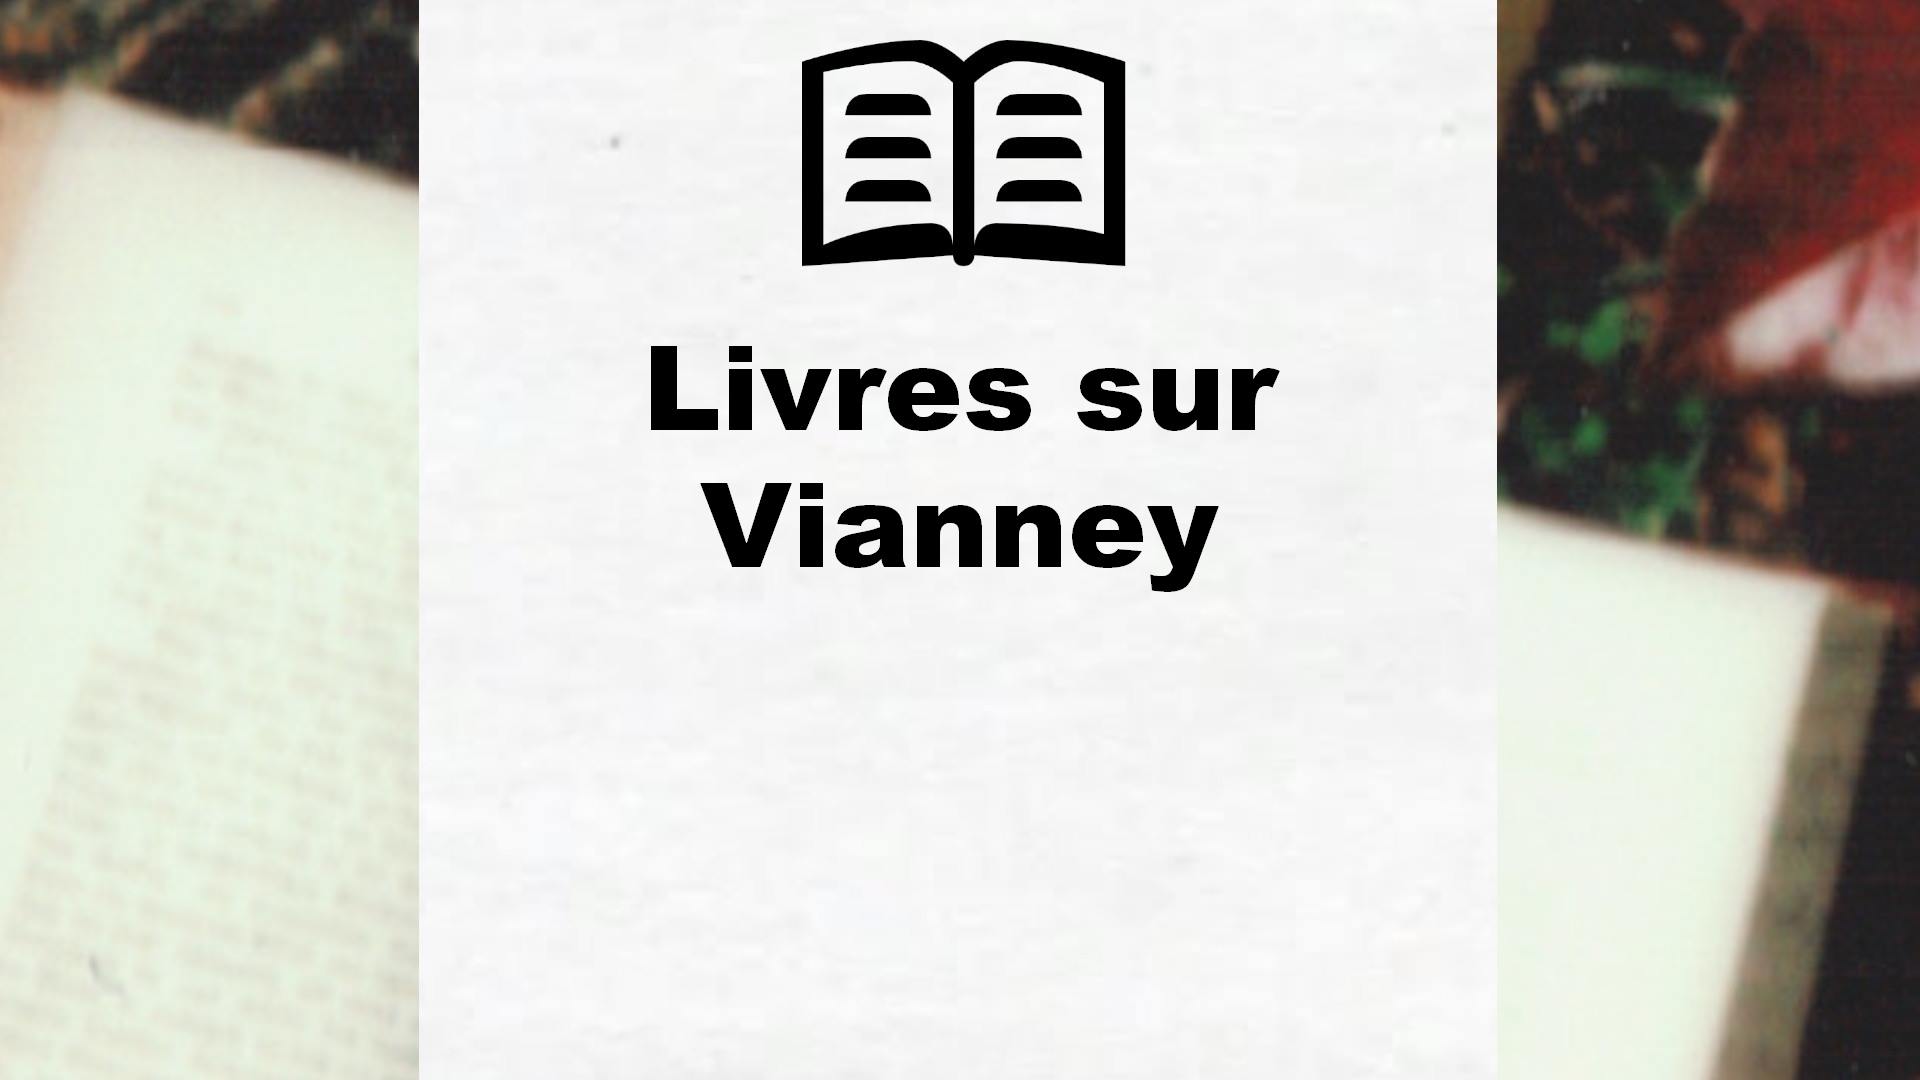 Livres sur Vianney